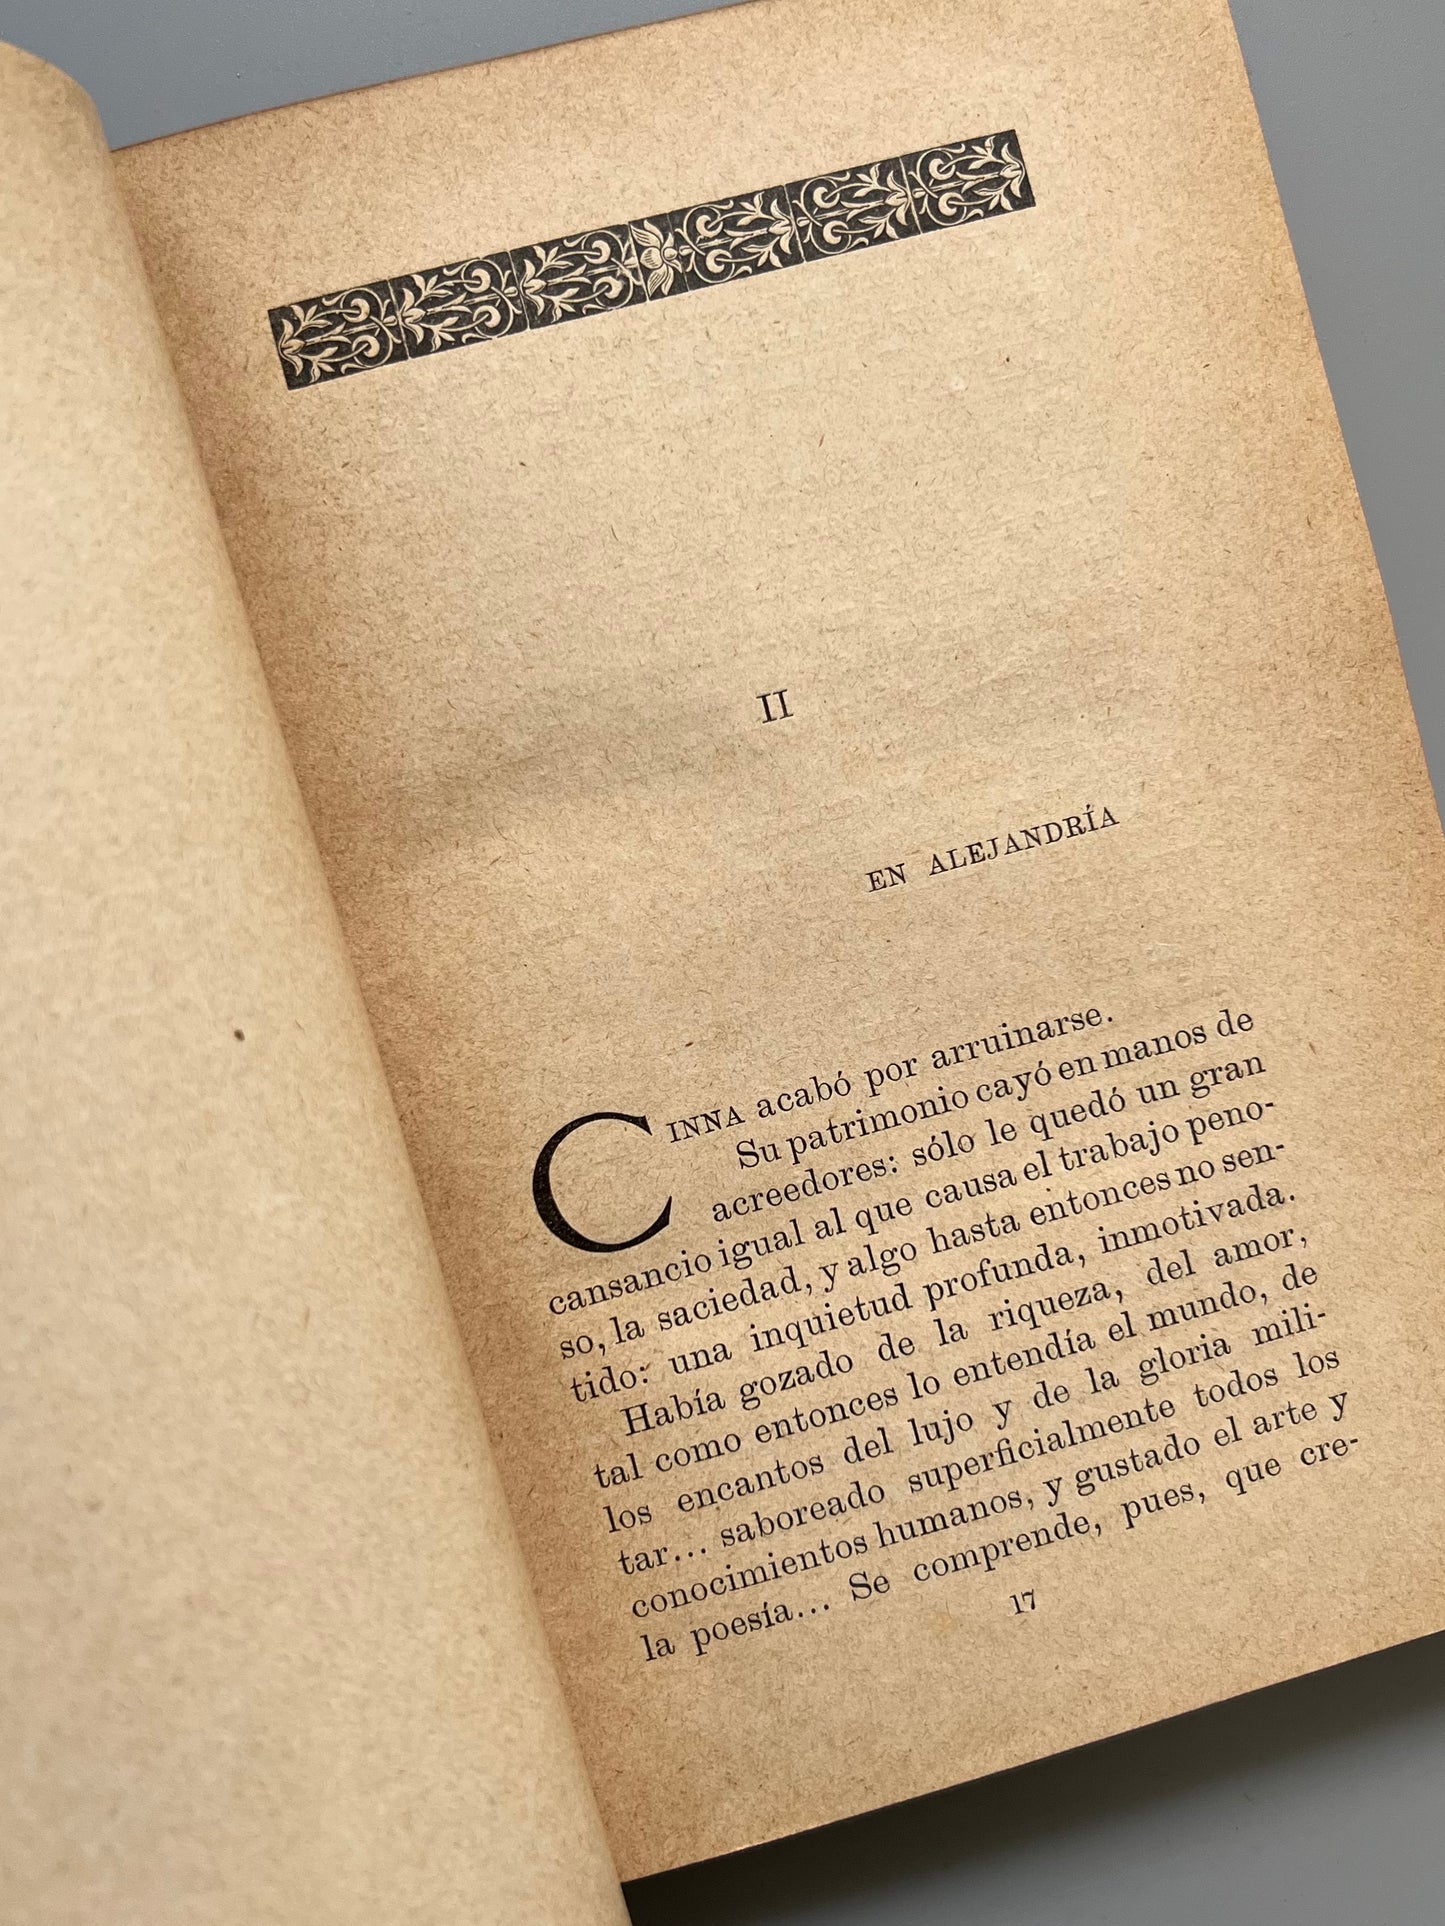 Sigámosle, Enrique Sienkiewicz - Librería y tipografía católica, ca. 1905